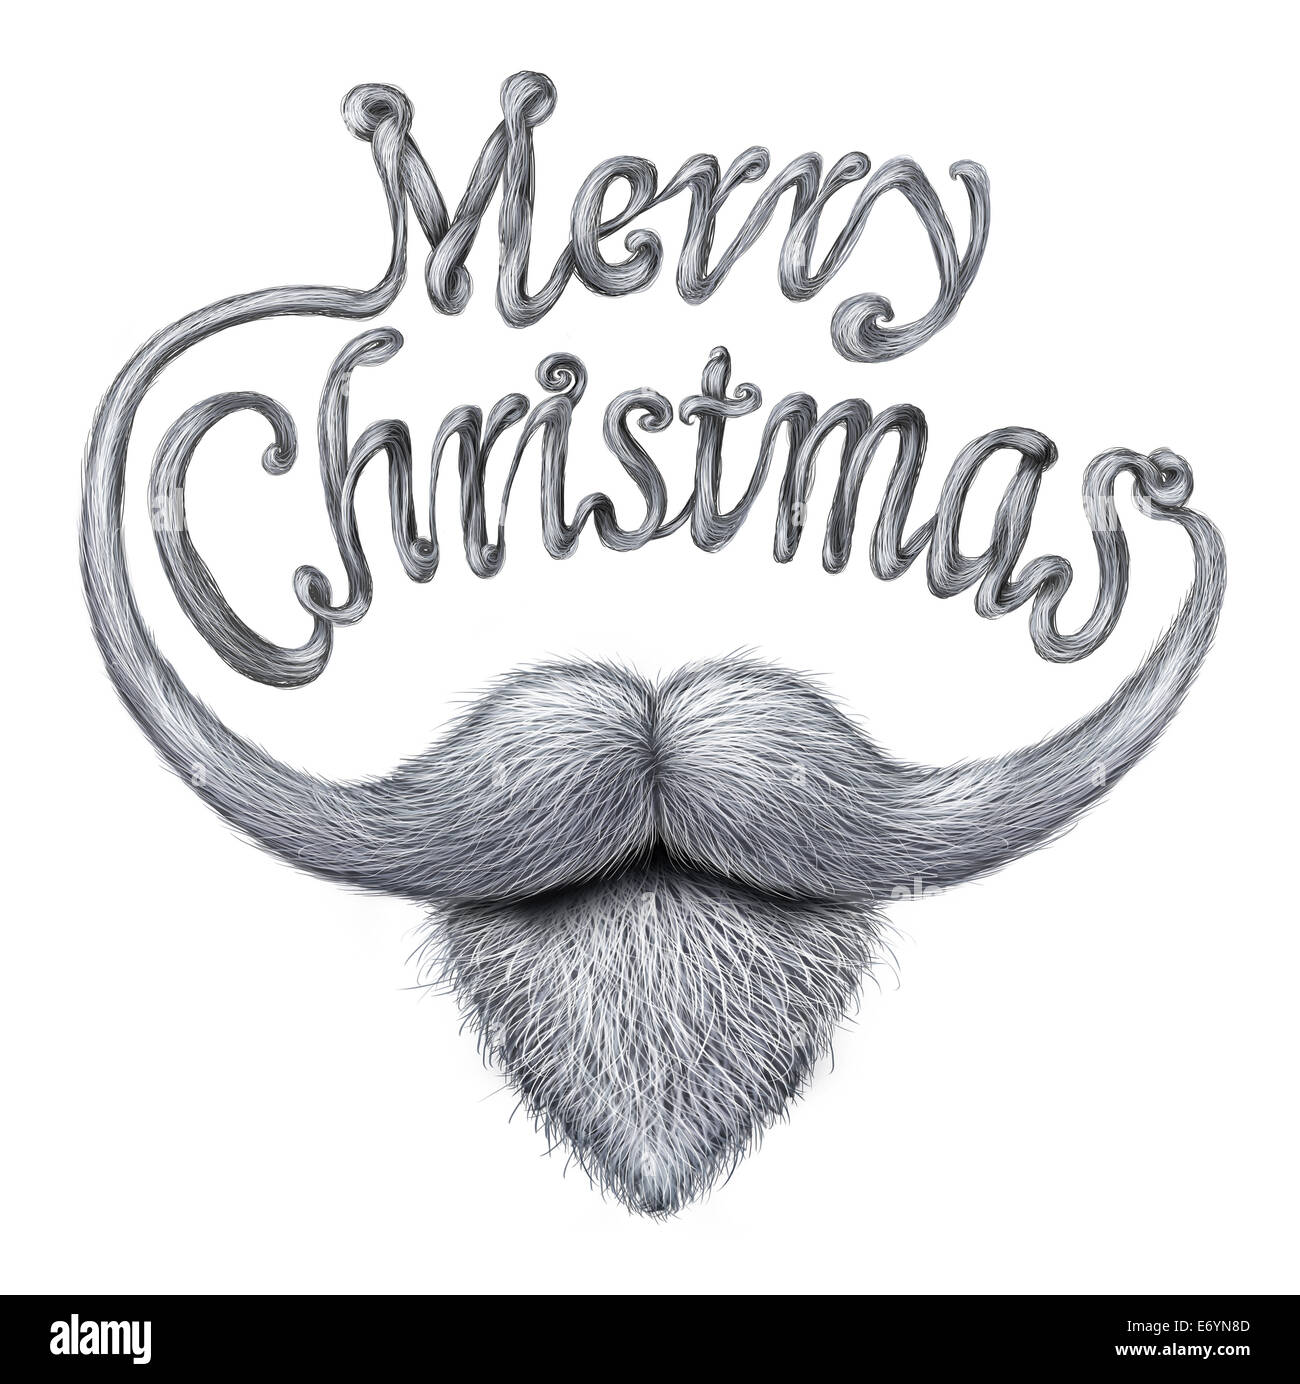 Joyeux Noël, une carte de vœux humoristique heureux message comme un père noël barbe et moustache avec de longues moustaches sous forme d'un texte écrit sur un fond blanc. Banque D'Images